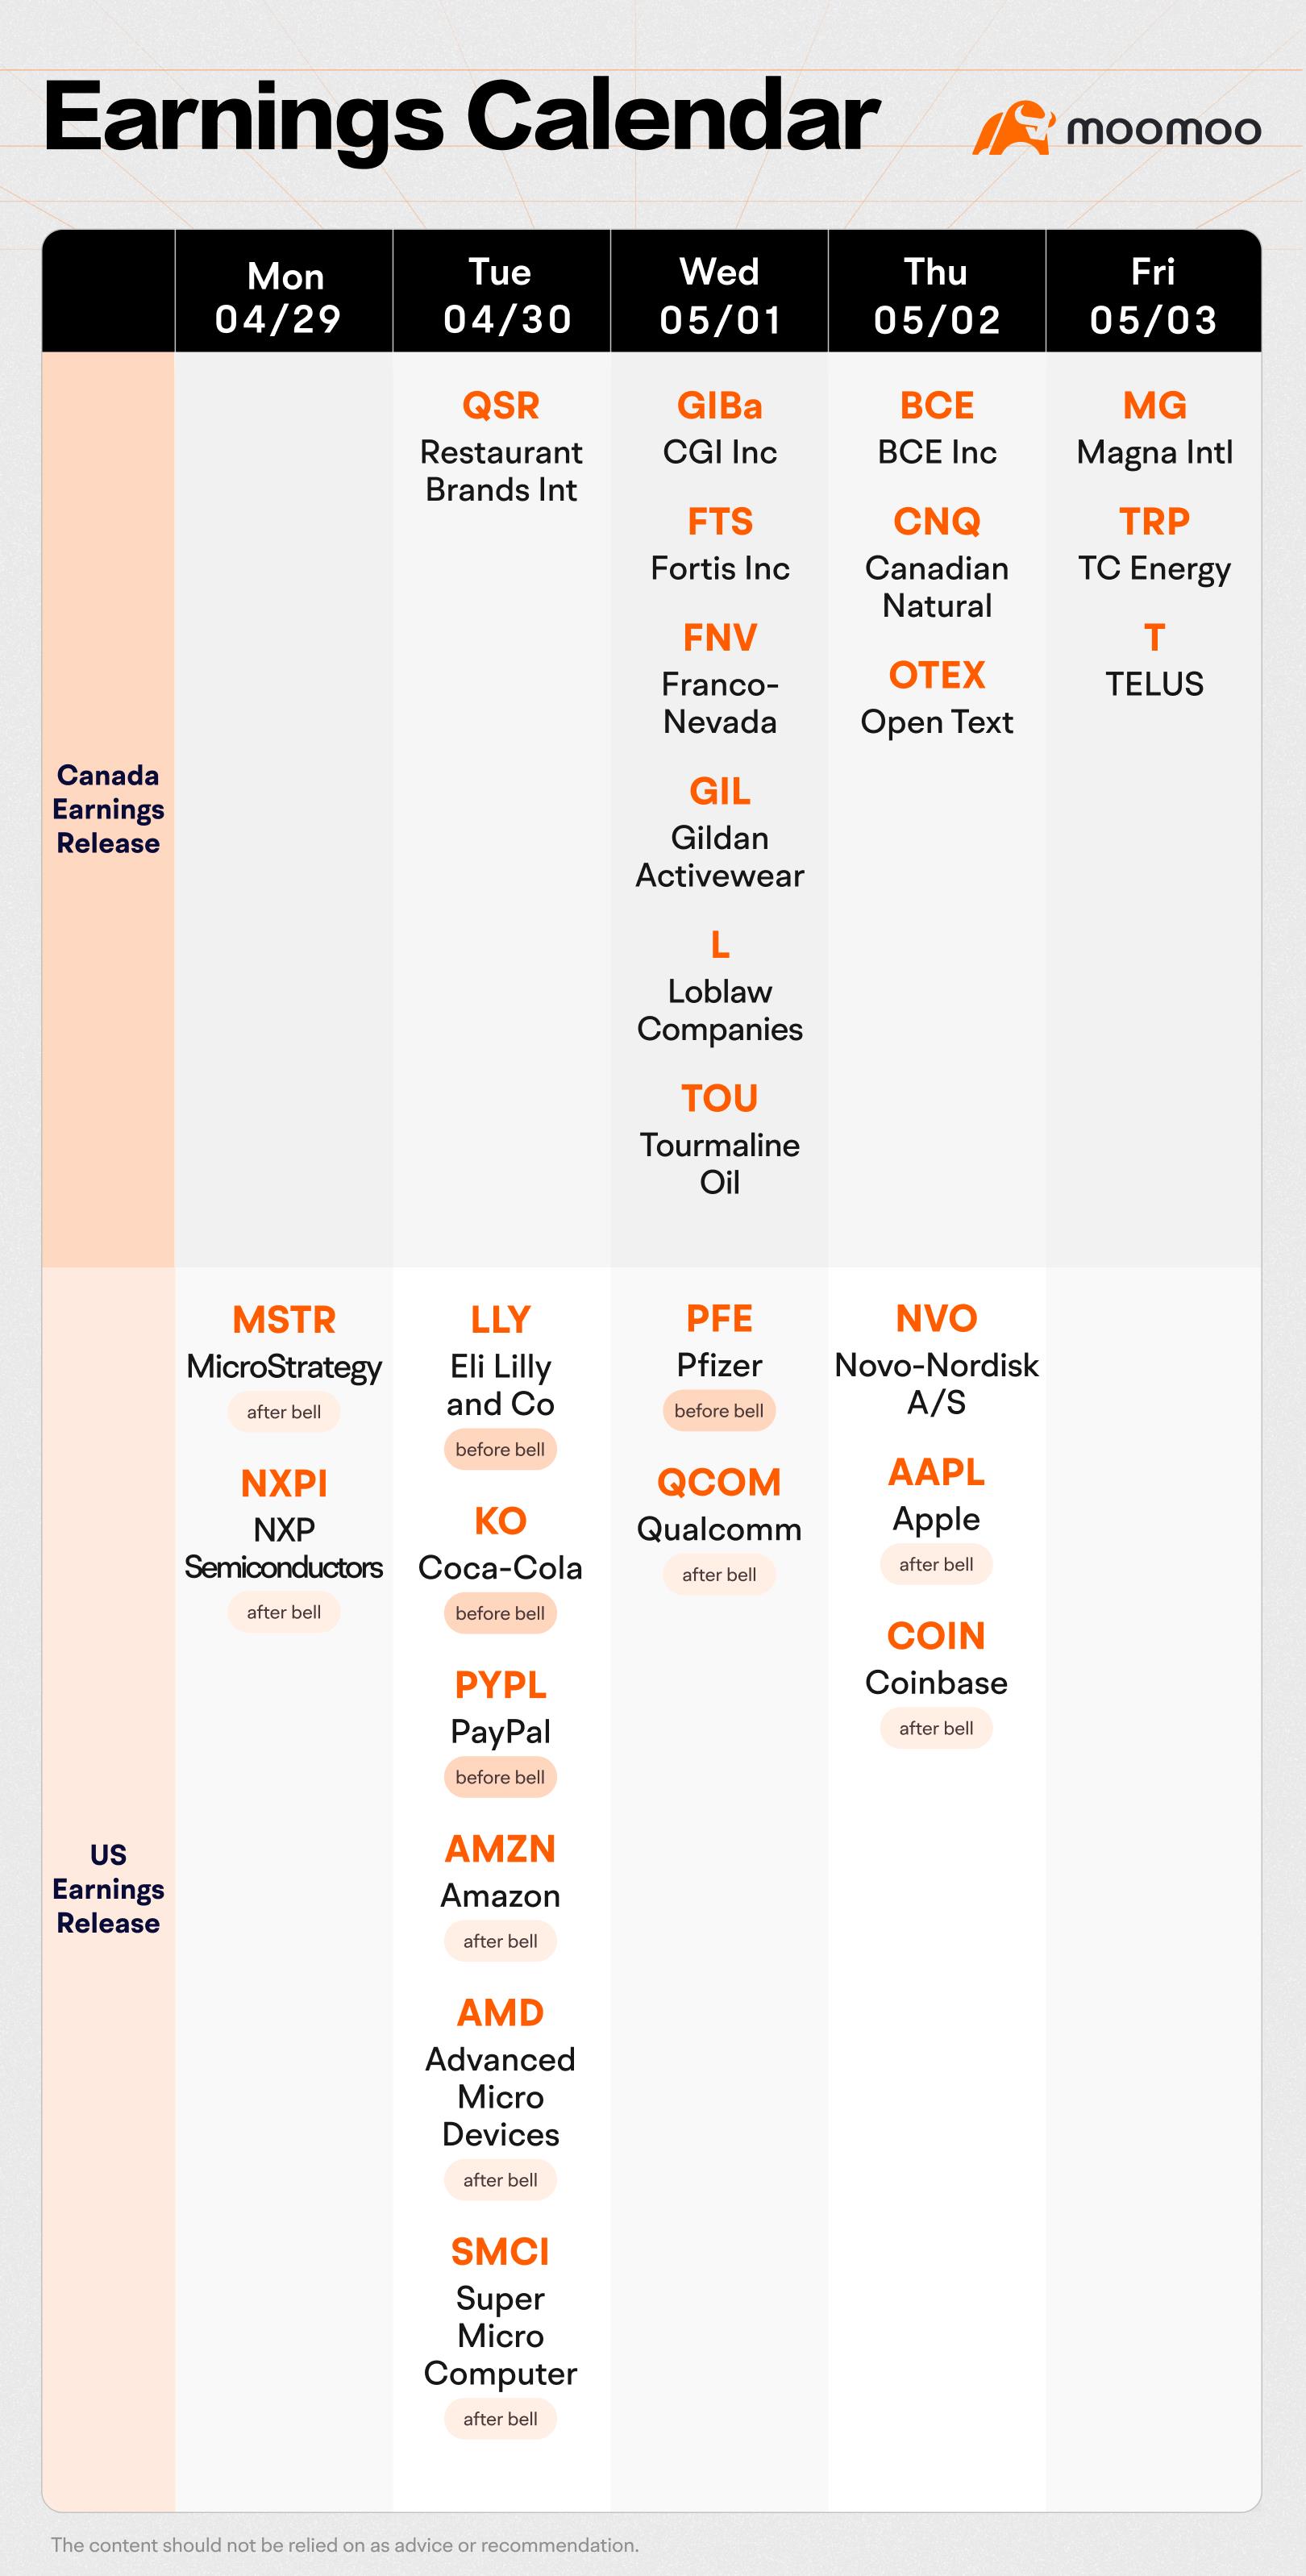 未来一周（AMZN、AMD、AAPL、BCE收益；美联储利率公告、加拿大国内生产总值数据）